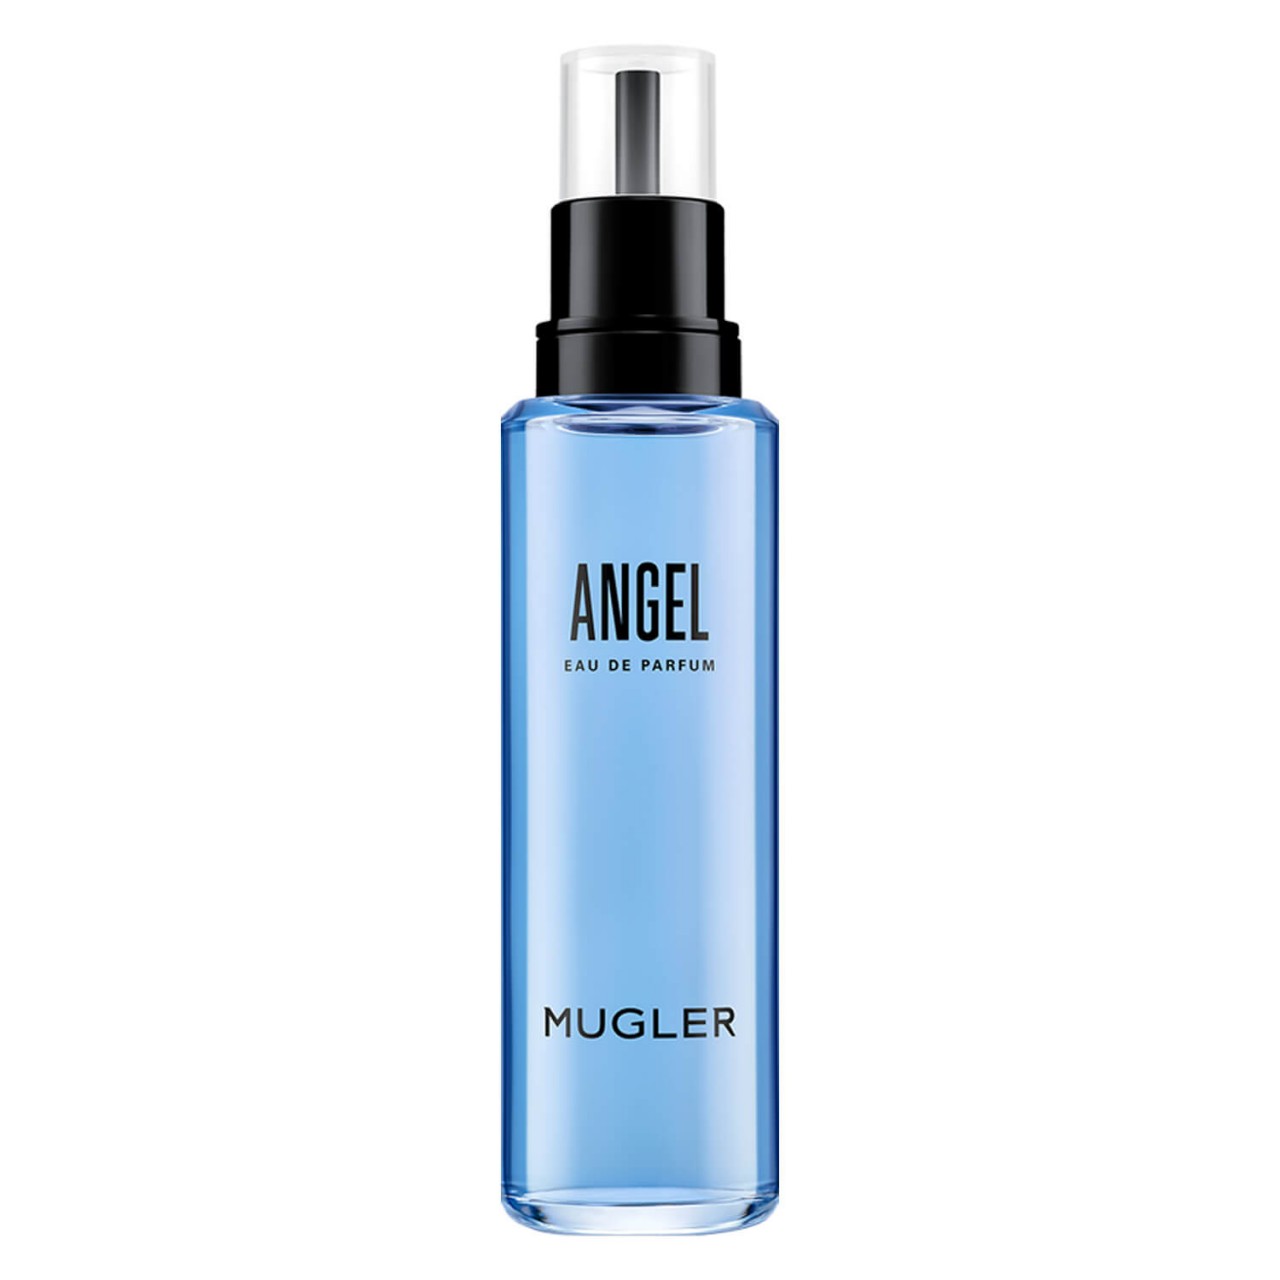 Angel - Shooting Star EdP Eco-Refill Bottle von MUGLER